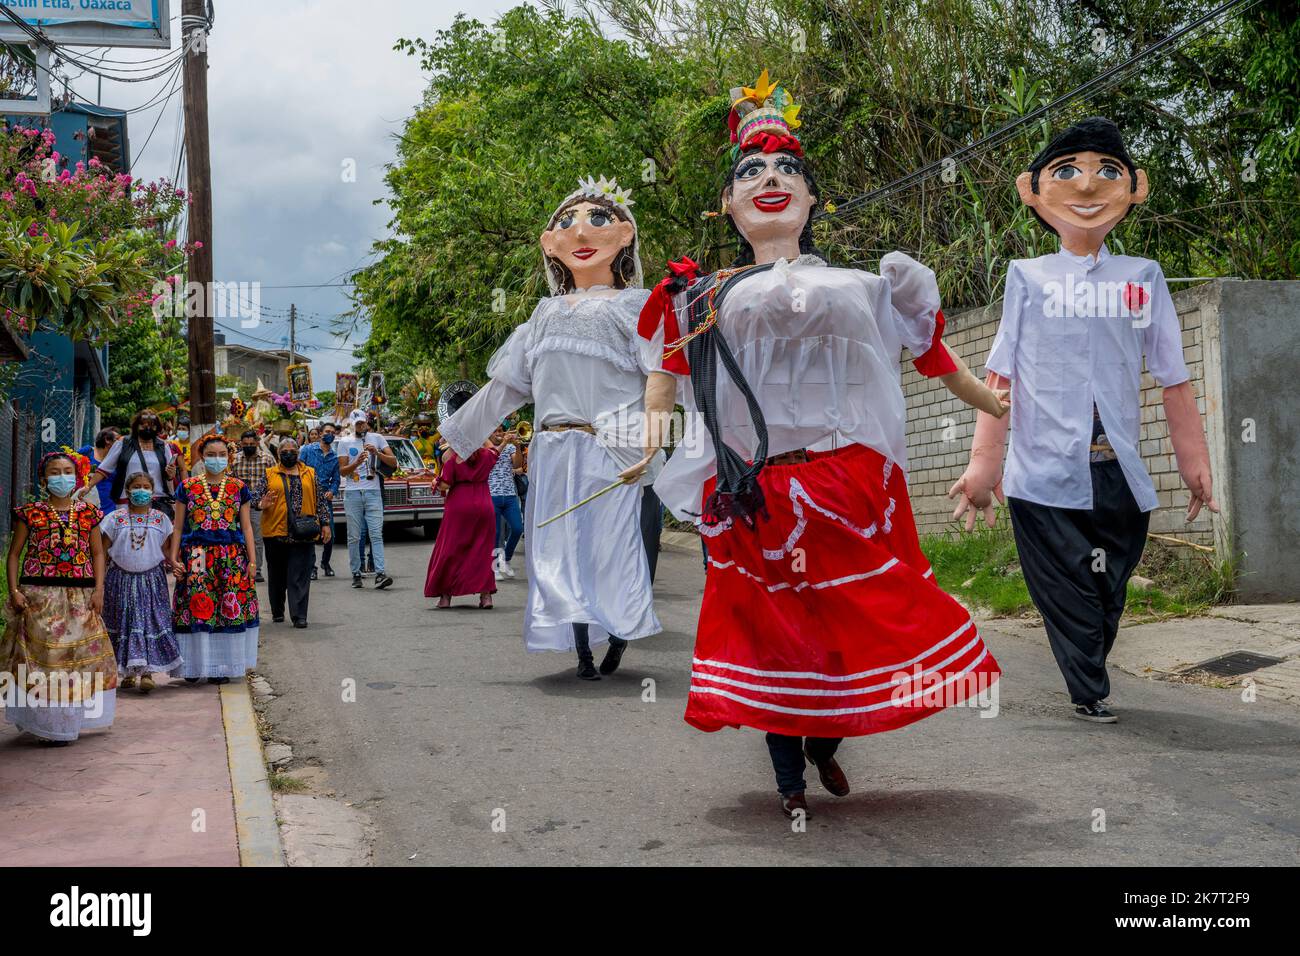 Eine Hochzeitsprozession mit Mojigangas (Riesenpuppen) in der Straße der kleinen Stadt San Agustin Etla in der Nähe von Oaxaca, Mexiko. Stockfoto